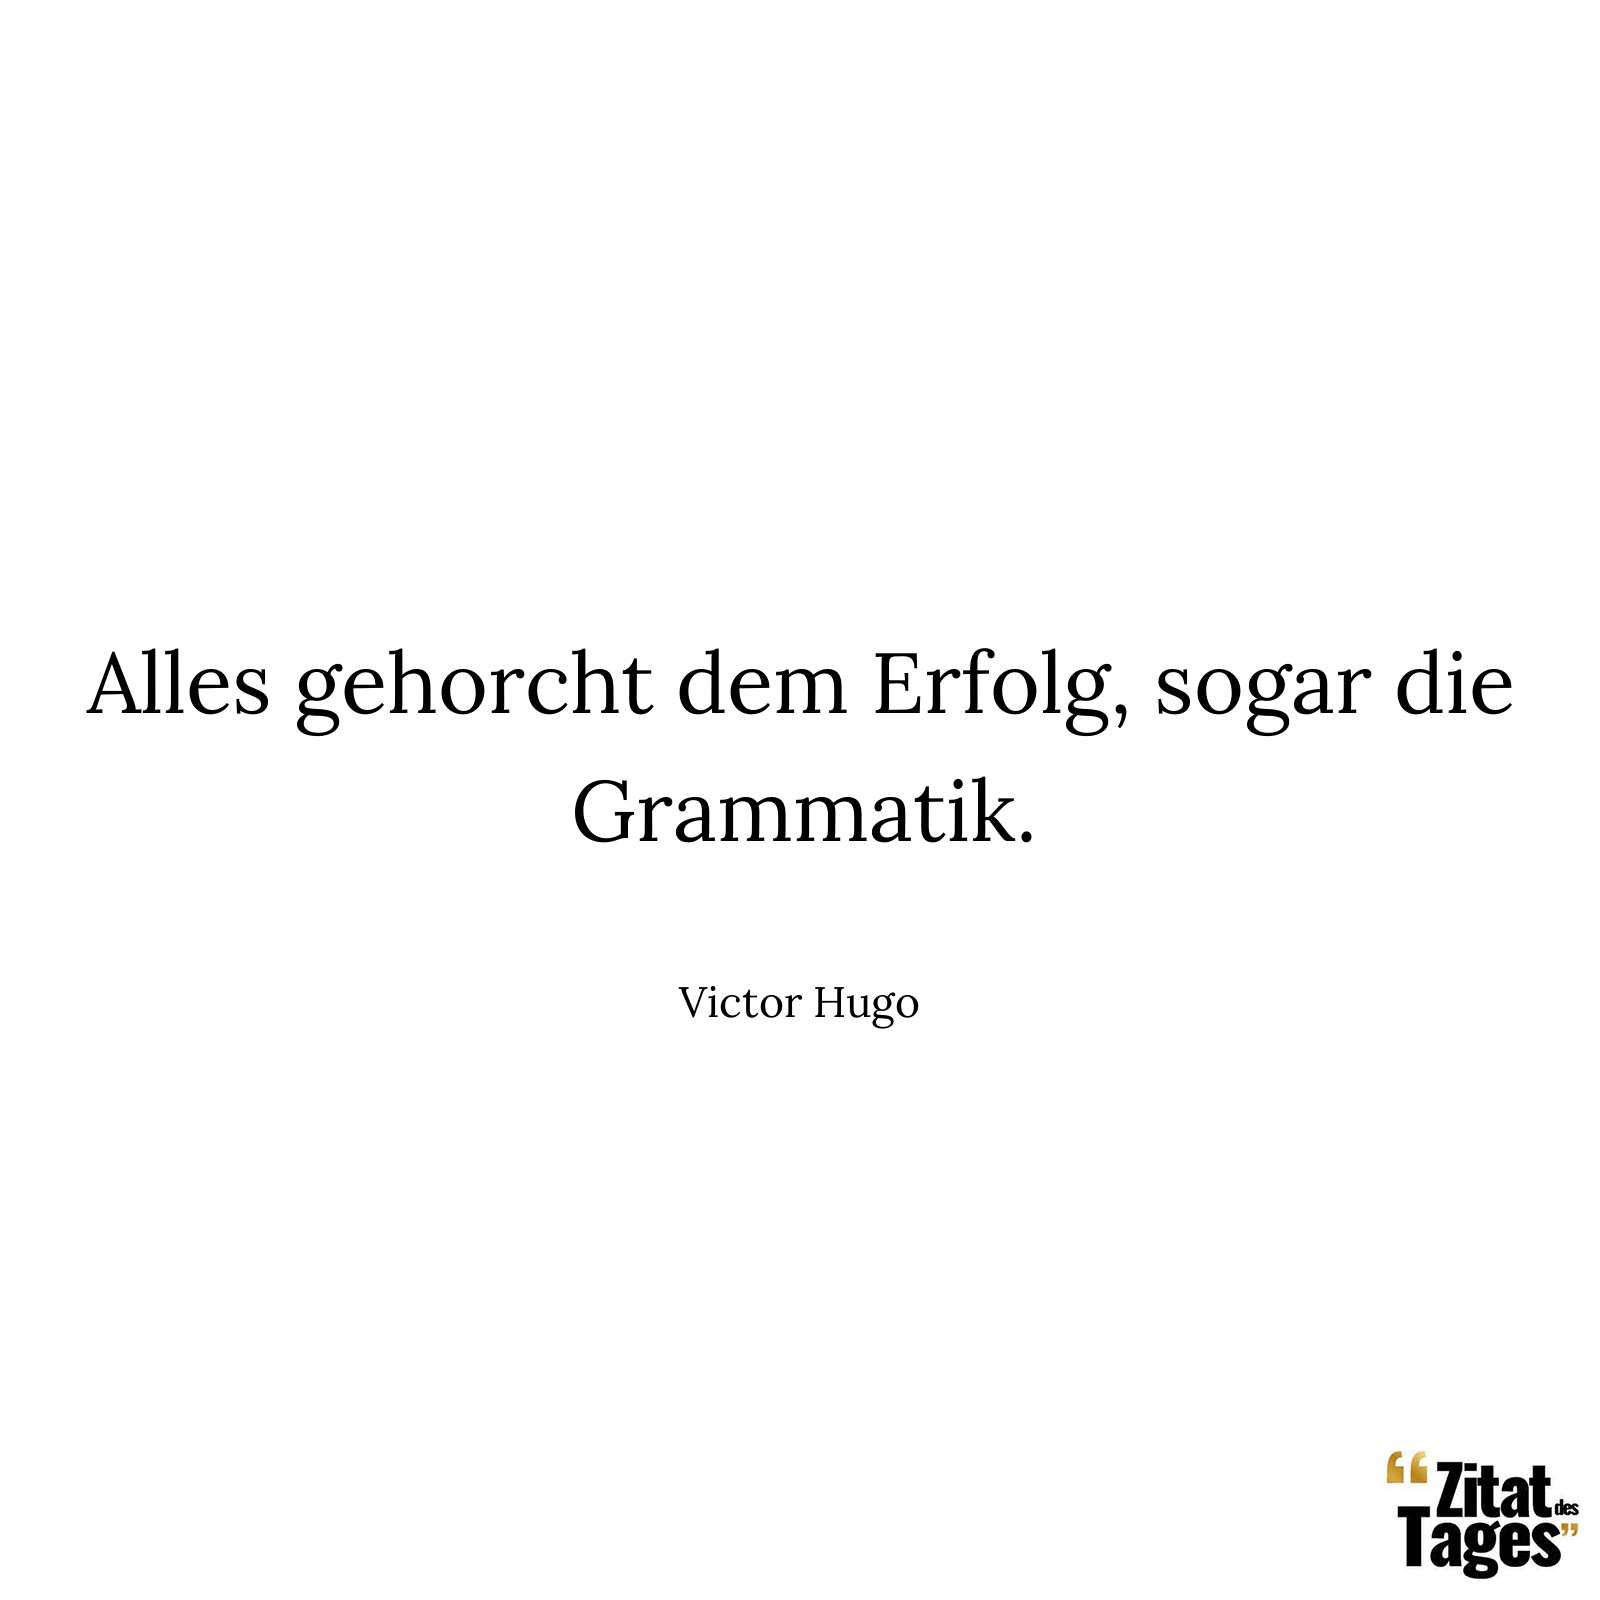 Alles gehorcht dem Erfolg, sogar die Grammatik. - Victor Hugo